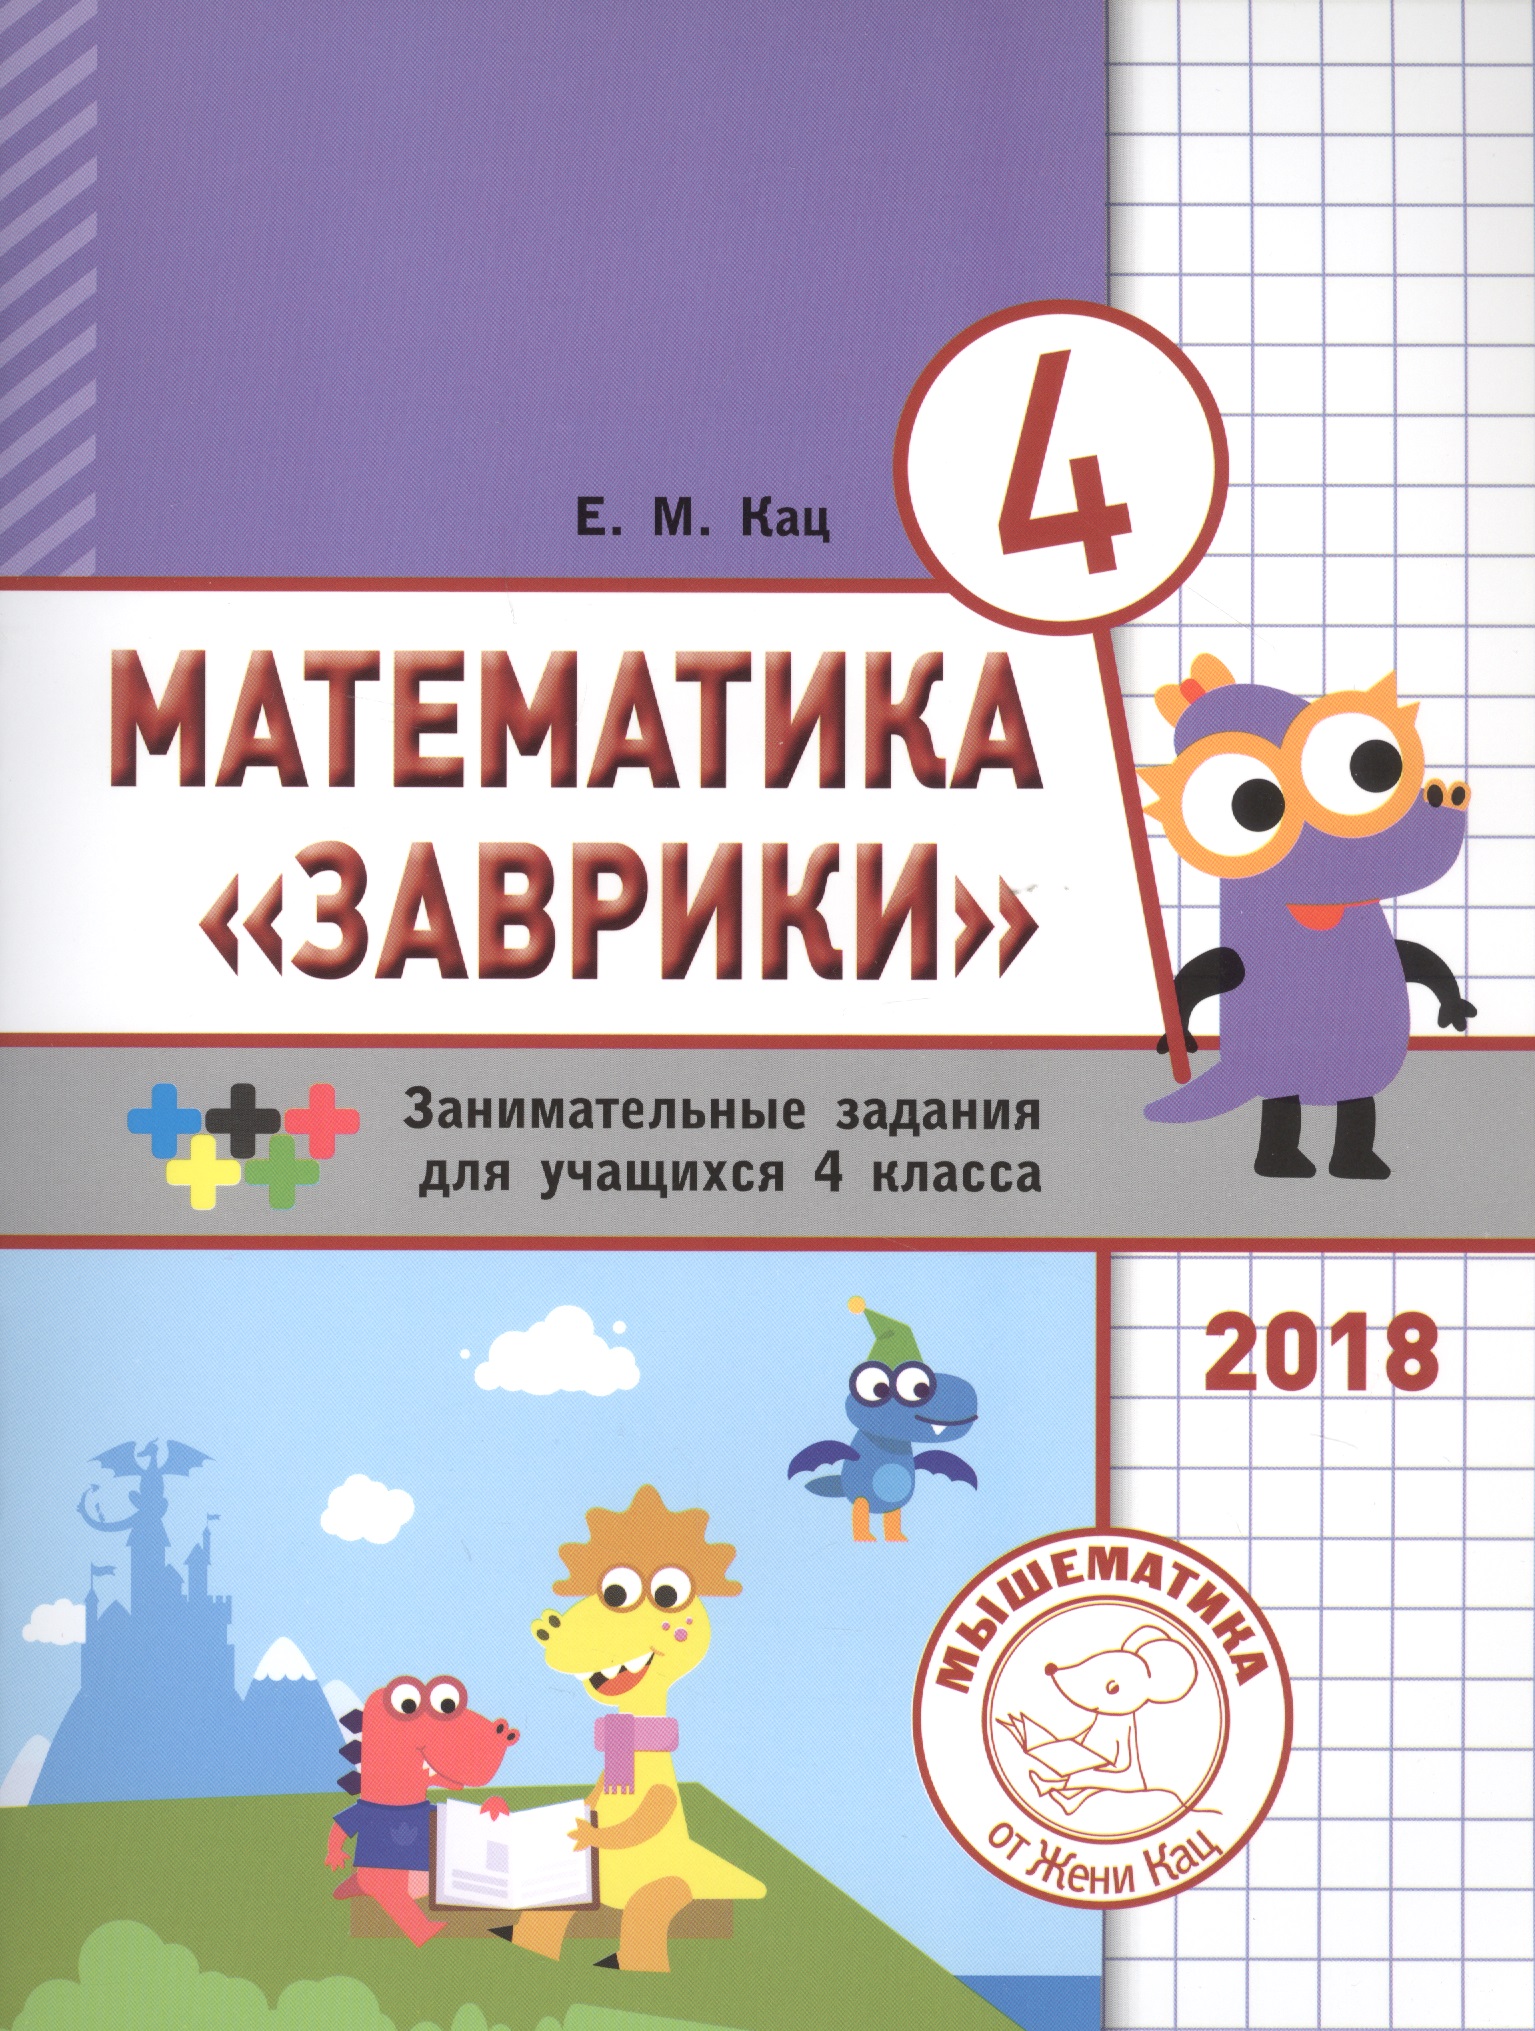 Кац Евгения Марковна Математика Заврики. 4 класс. Сборник занимательных заданий для учащихся